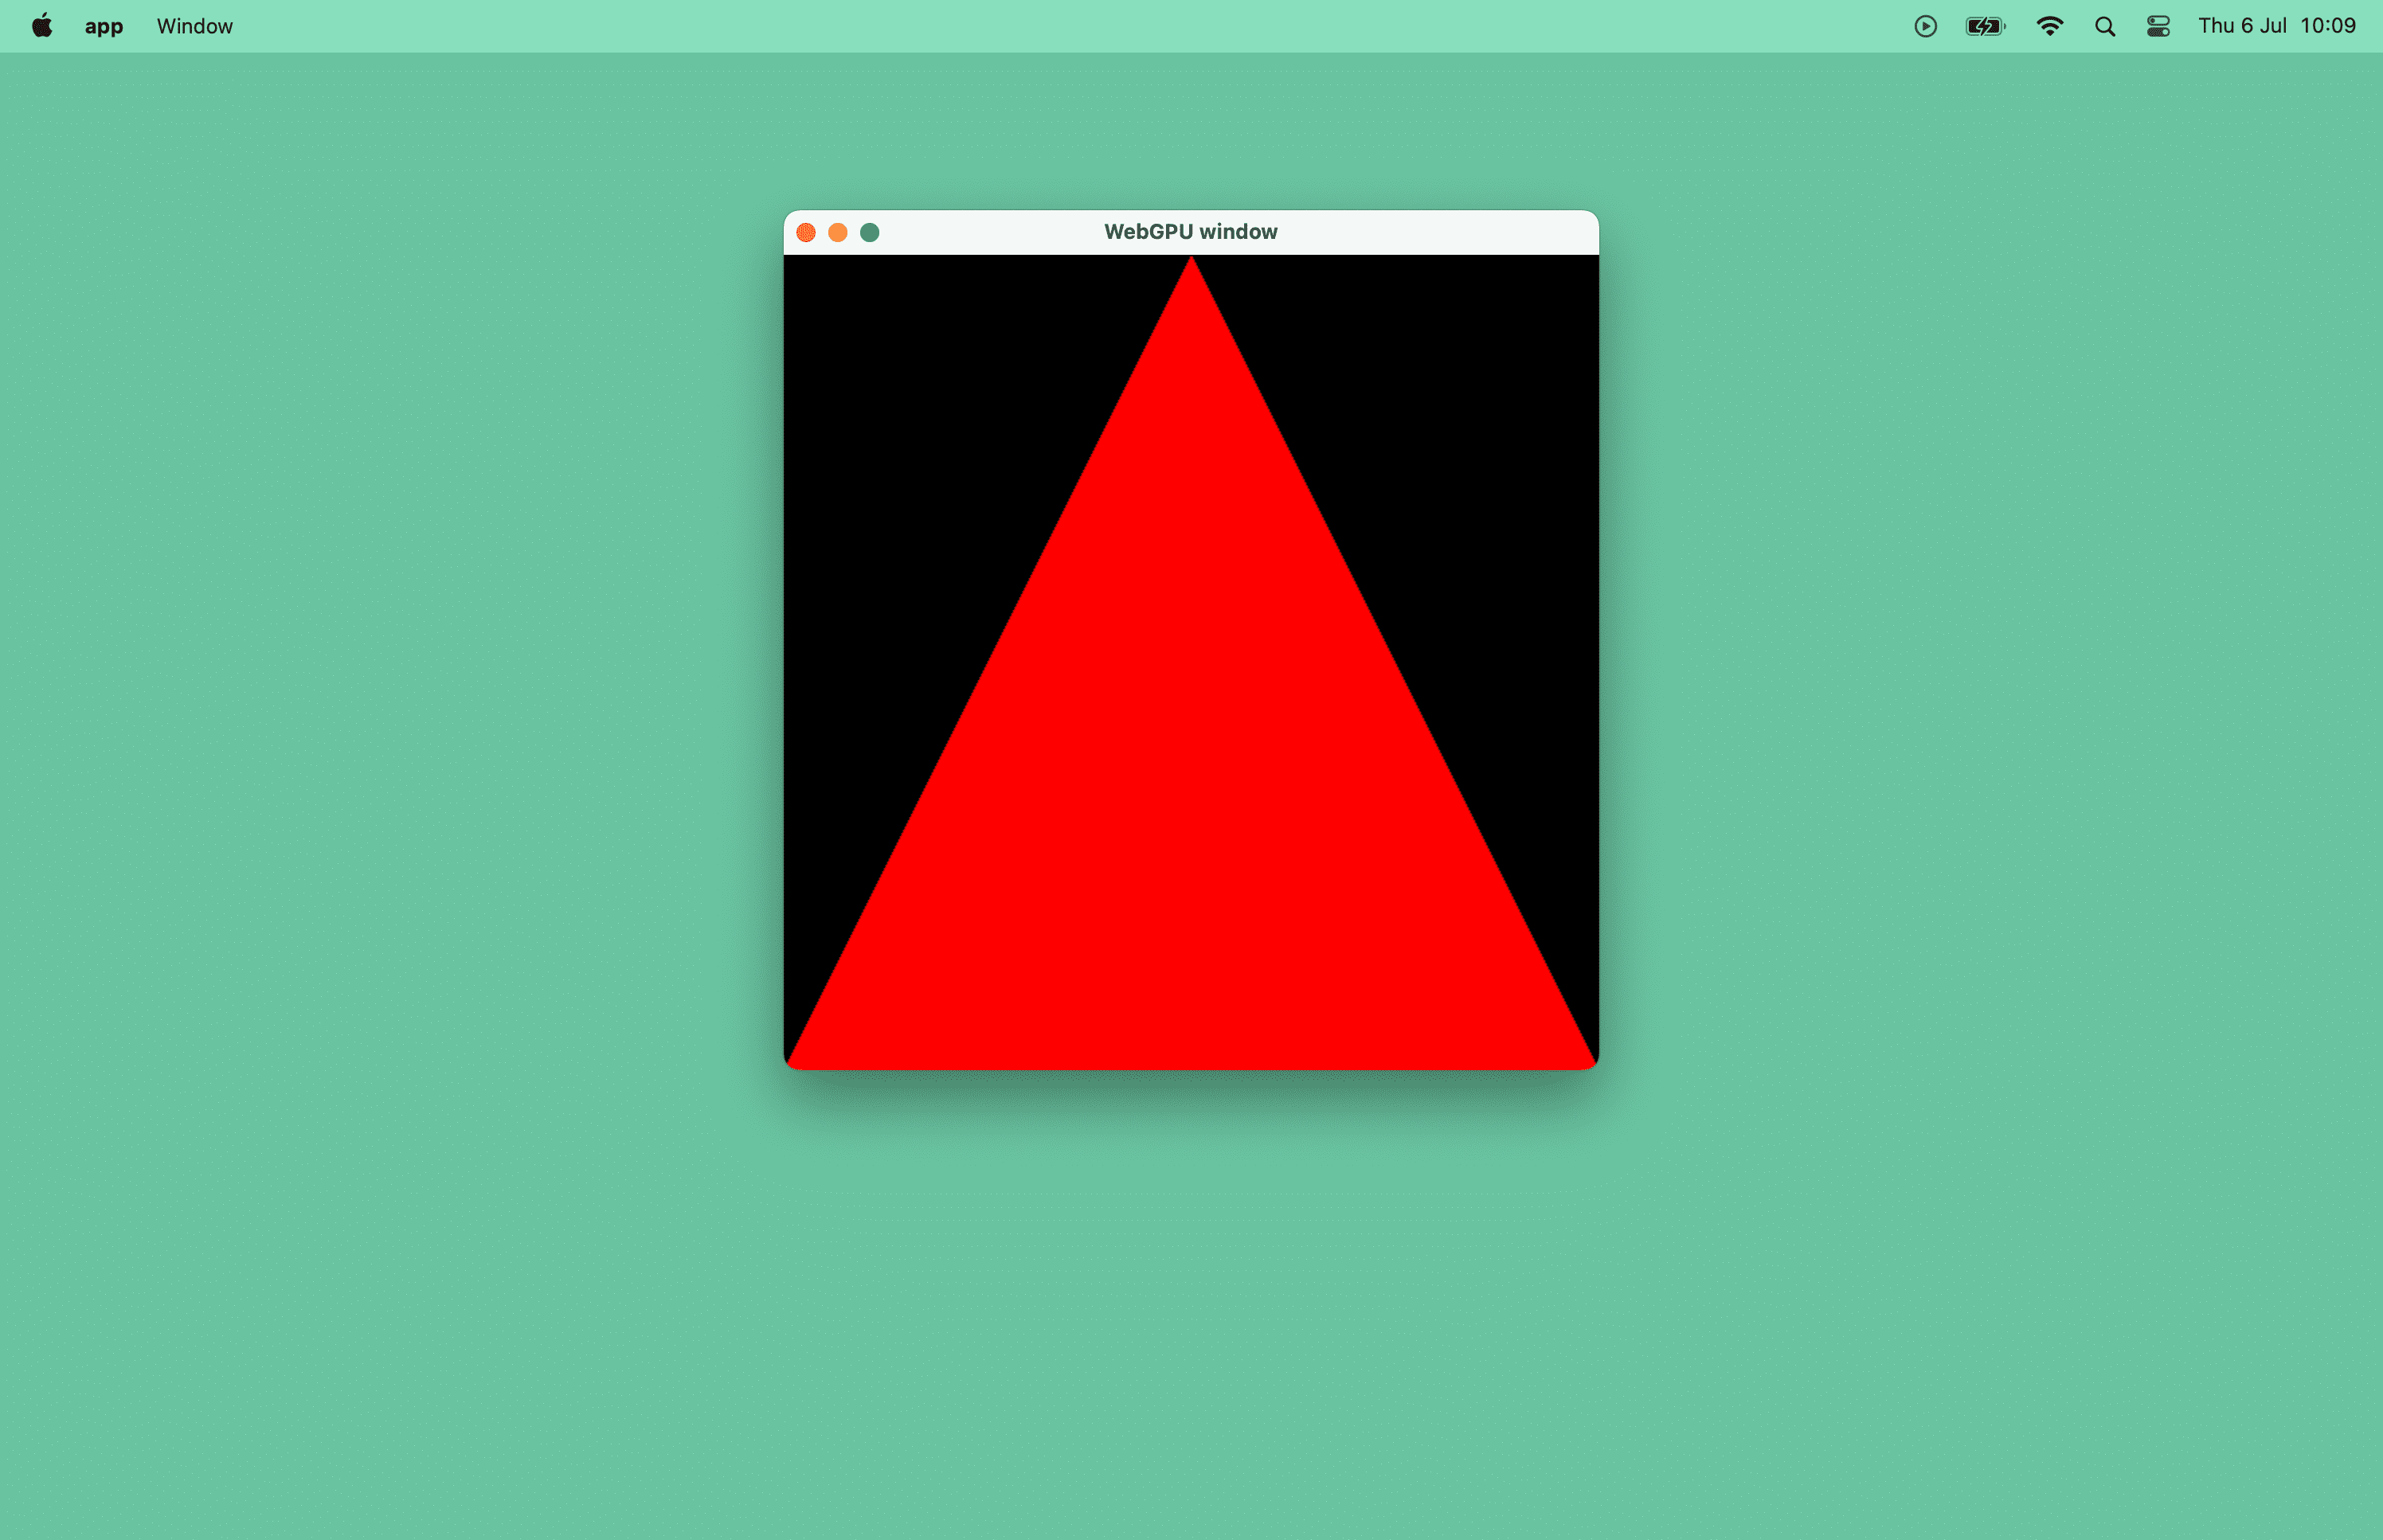 Скриншот красного треугольника в окне macOS.